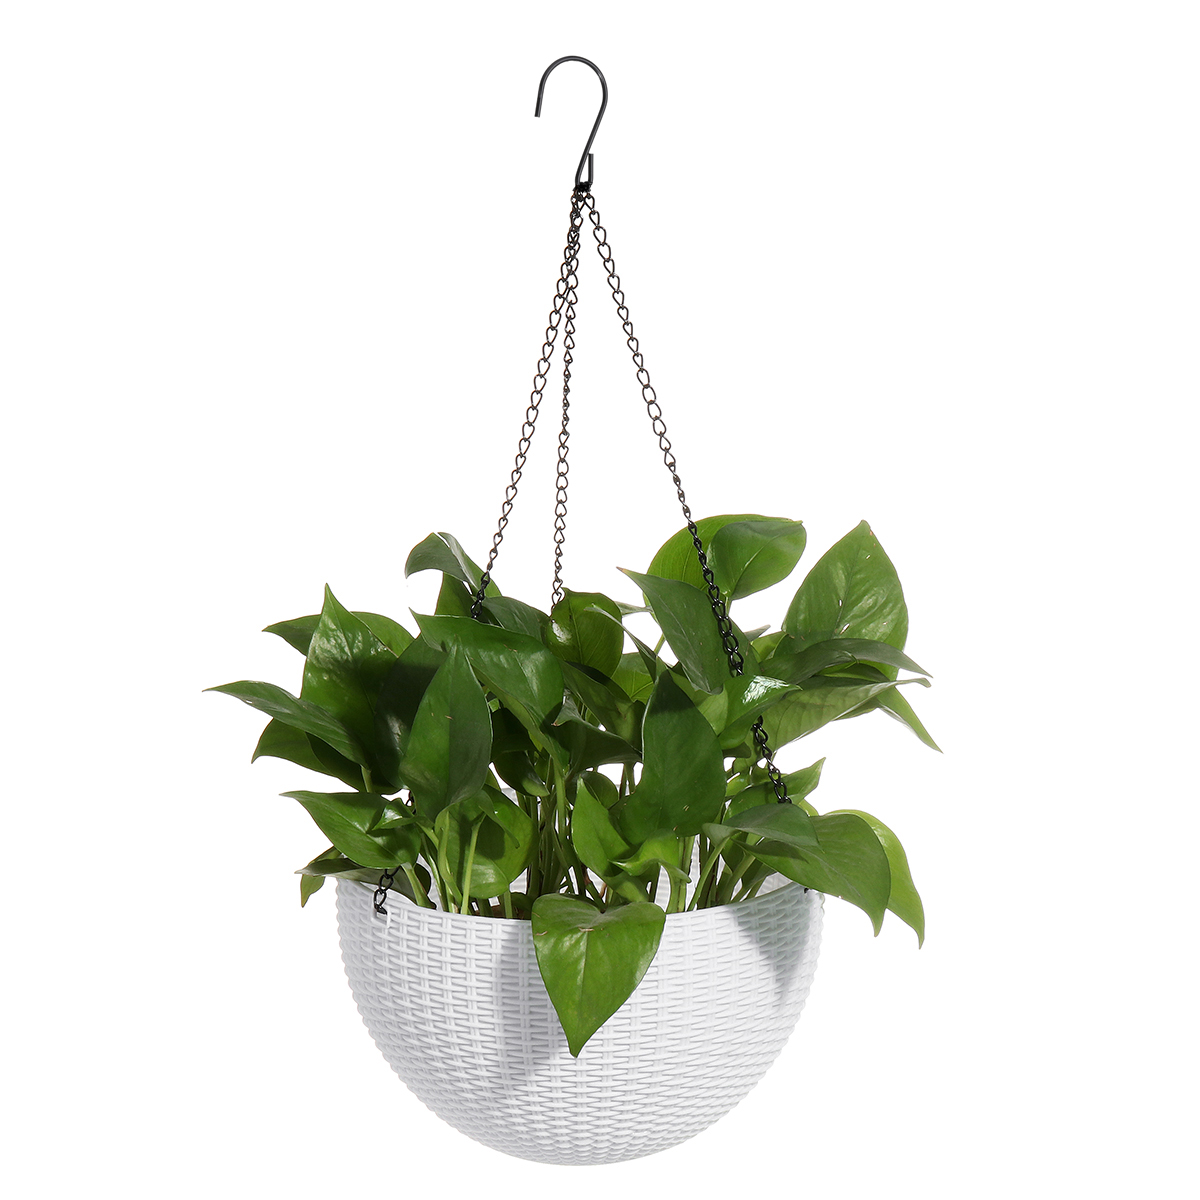 Hanging Planter Flower Pot Holder Rattan Baskets for Home & Garden - image 1 of 6